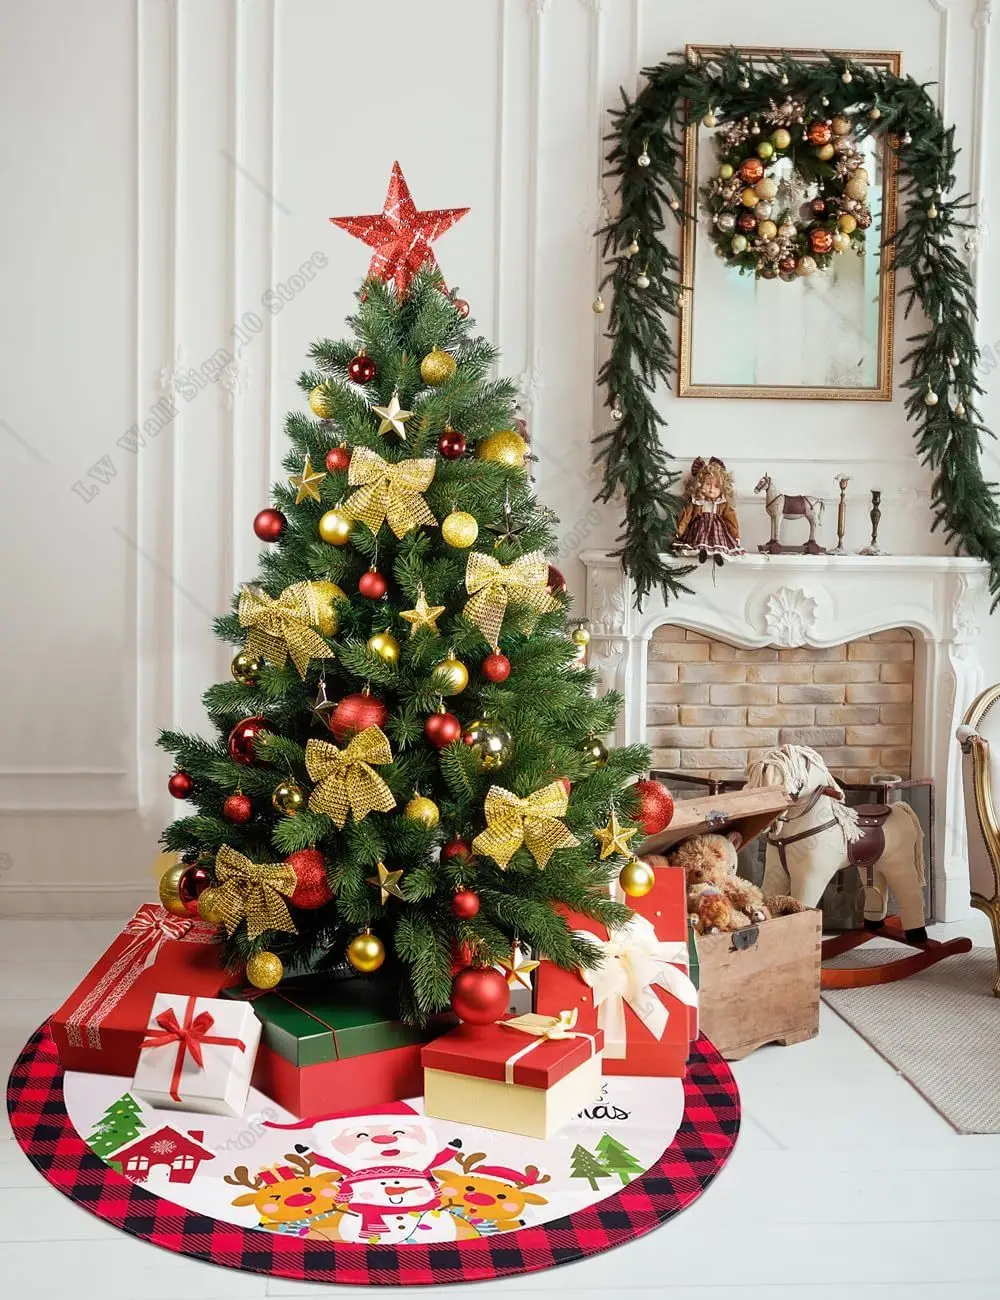 Санта и Лось елка юбка Рождество Буффало плед дома украшения Новый год праздничная вечеринка декор фермерского дома Рождественская елка коврик